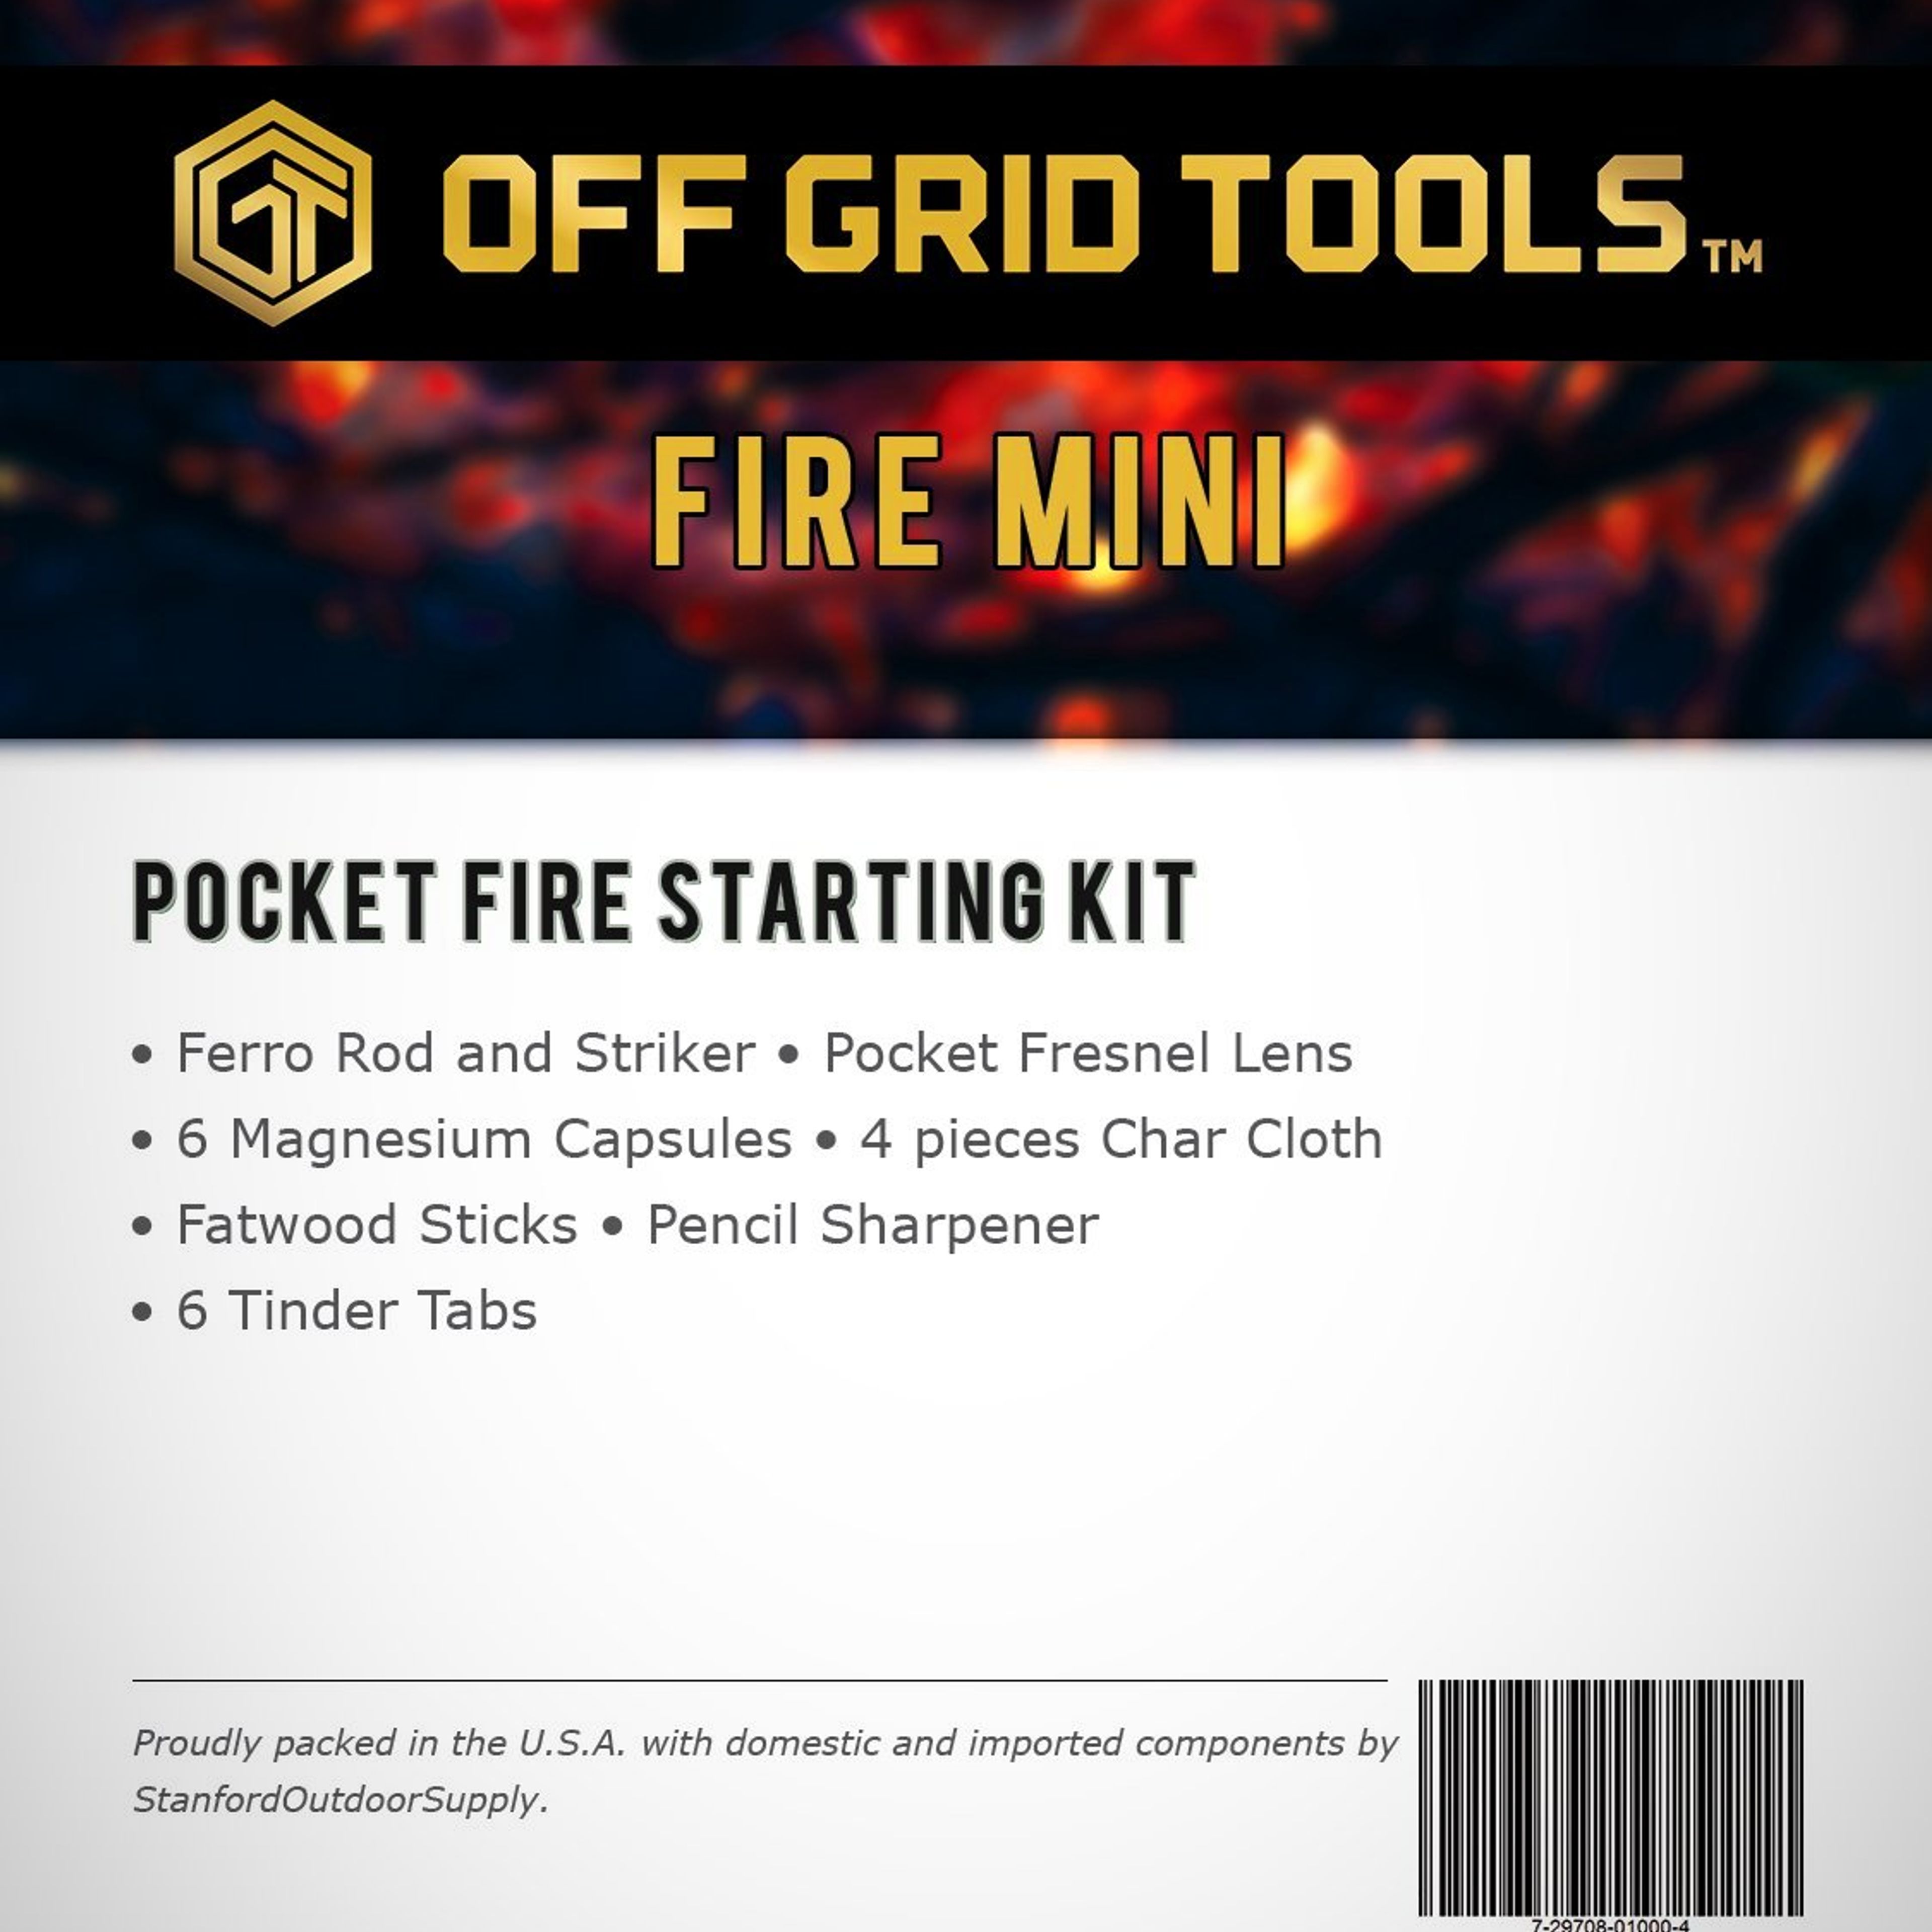 OGT Fire Mini - Pocket Fire Starting Kit